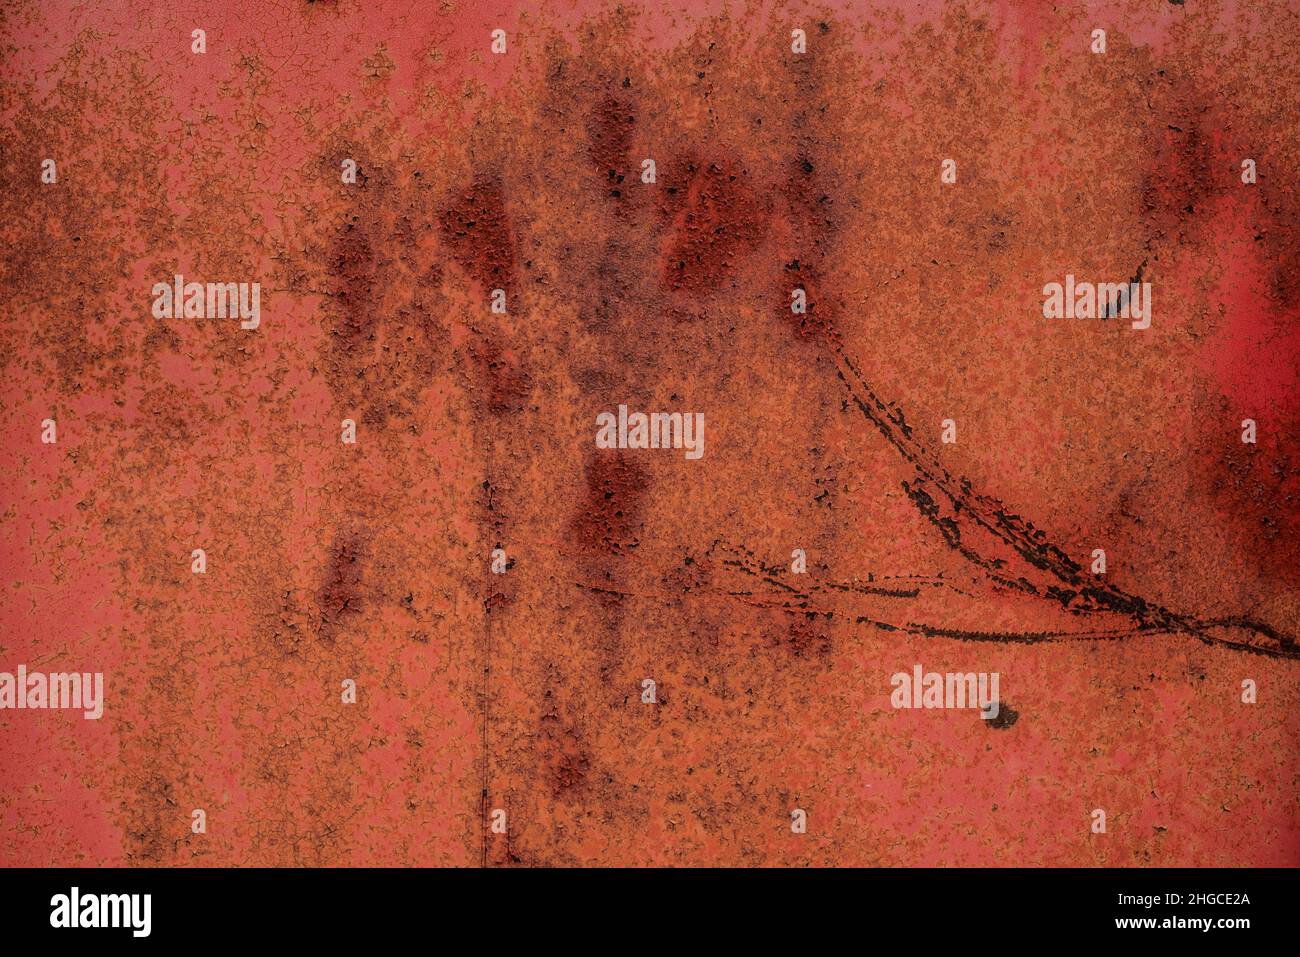 rasguños oxidados y pintura agrietada en la superficie lacada de un viejo contenedor de metal Foto de stock